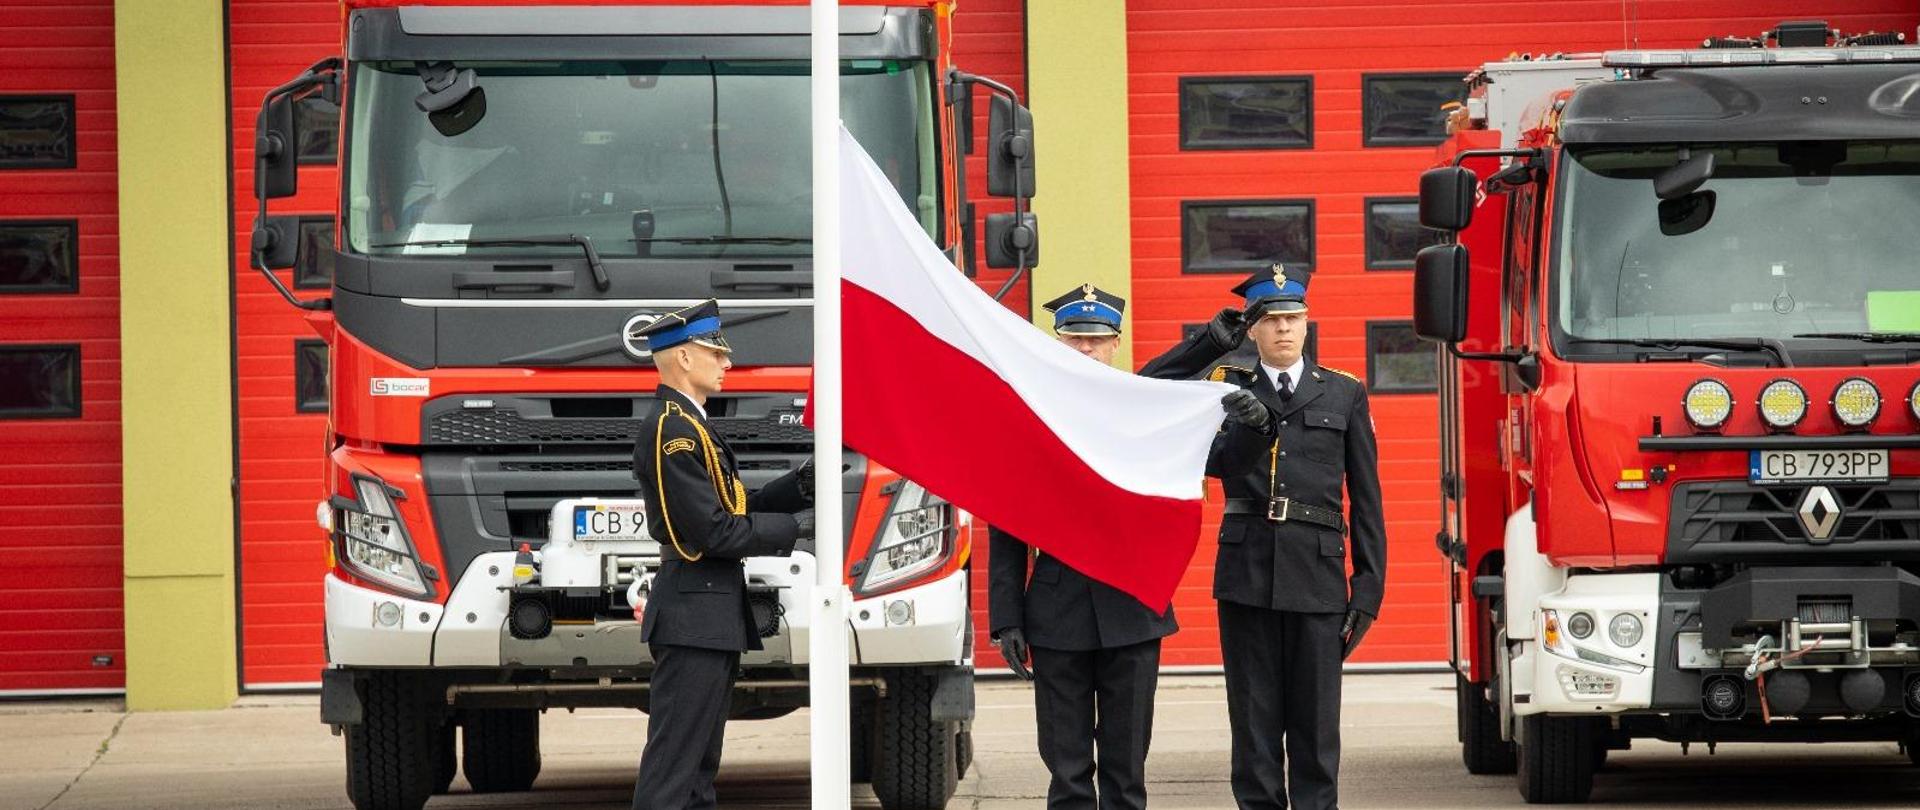 Trzech strażaków stoi przy maszcie flagowym. Jeden zaczyna podnosić flagę Polski w górę na maszt. Dwóch strażaków salutuje. Za masztem stoją samochody strażackie,